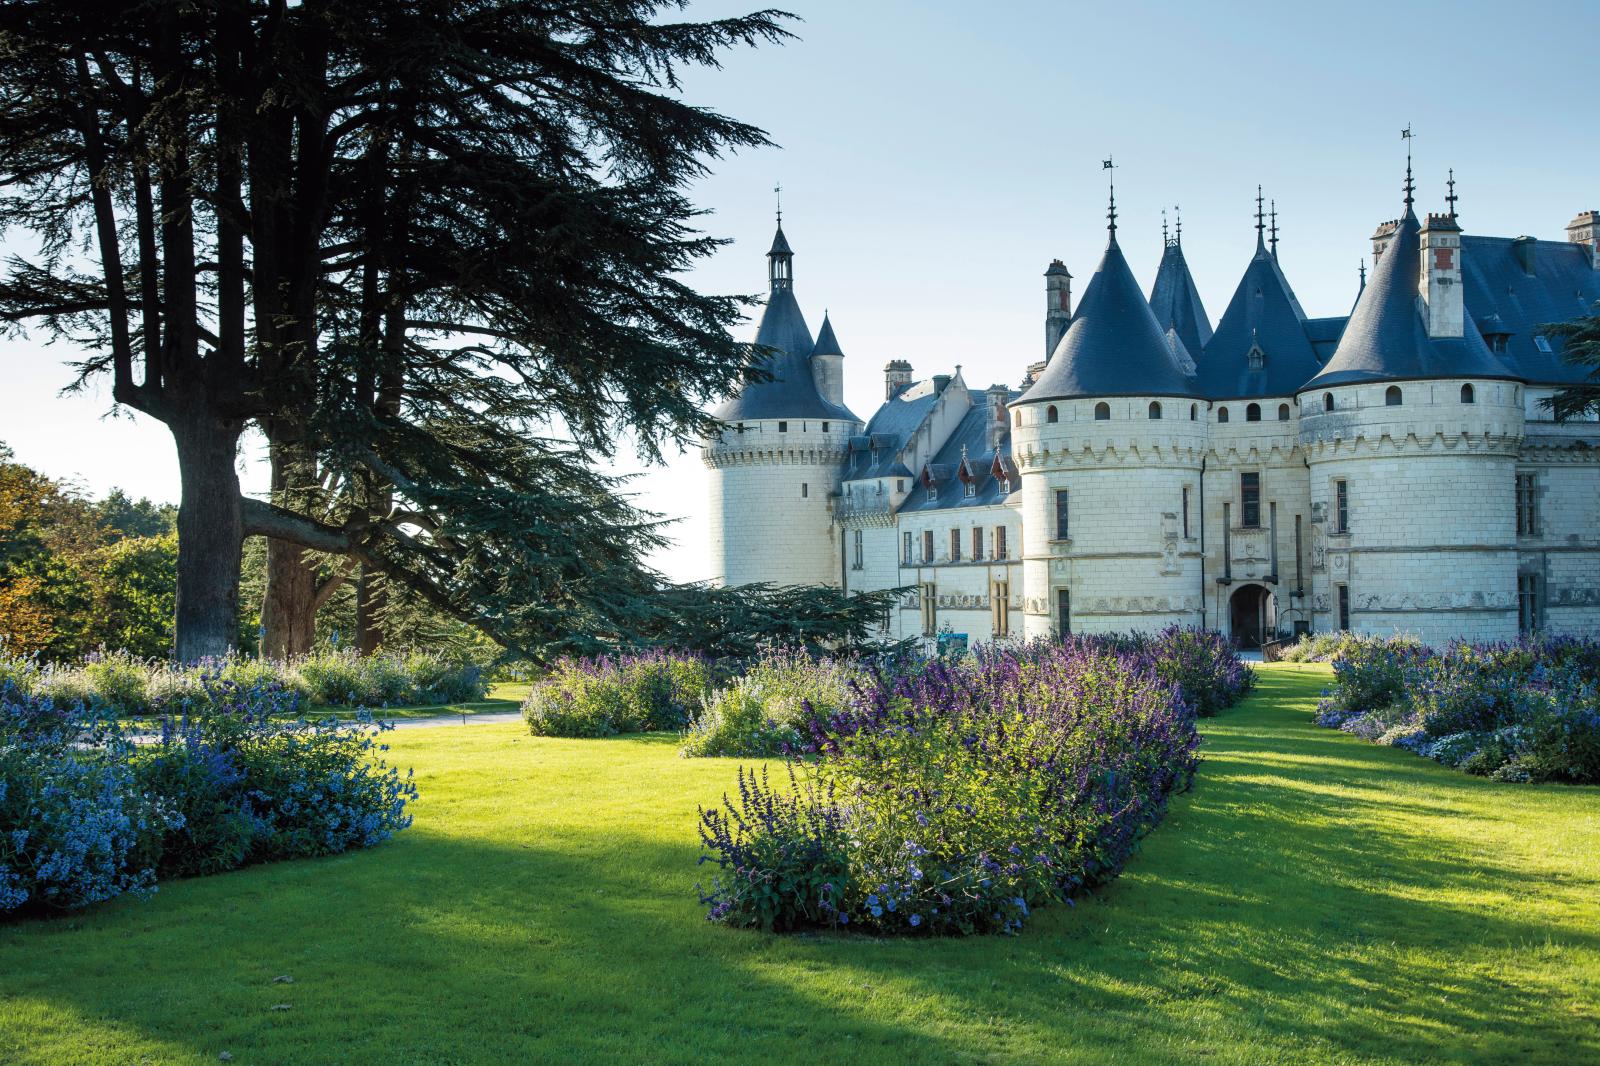 Le château de Chaumont-sur-Loire, construit aux XVe et XVIe siècles.© Éric Sander